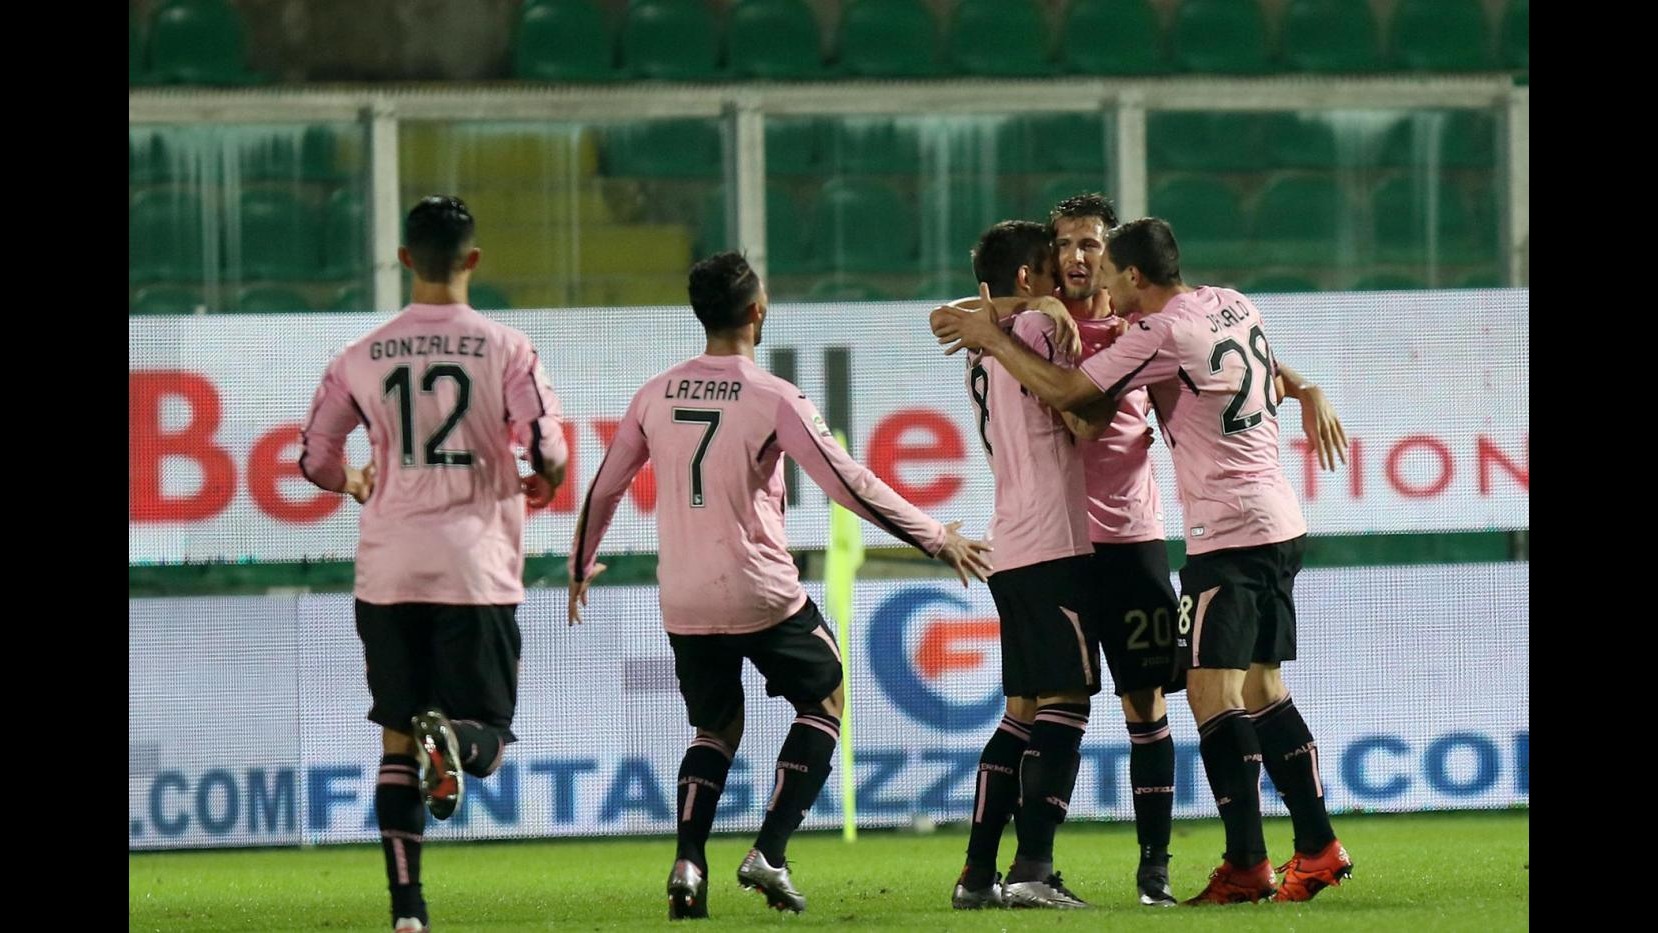 Serie A, Palermo scatenato: Frosinone si inchina 4-1